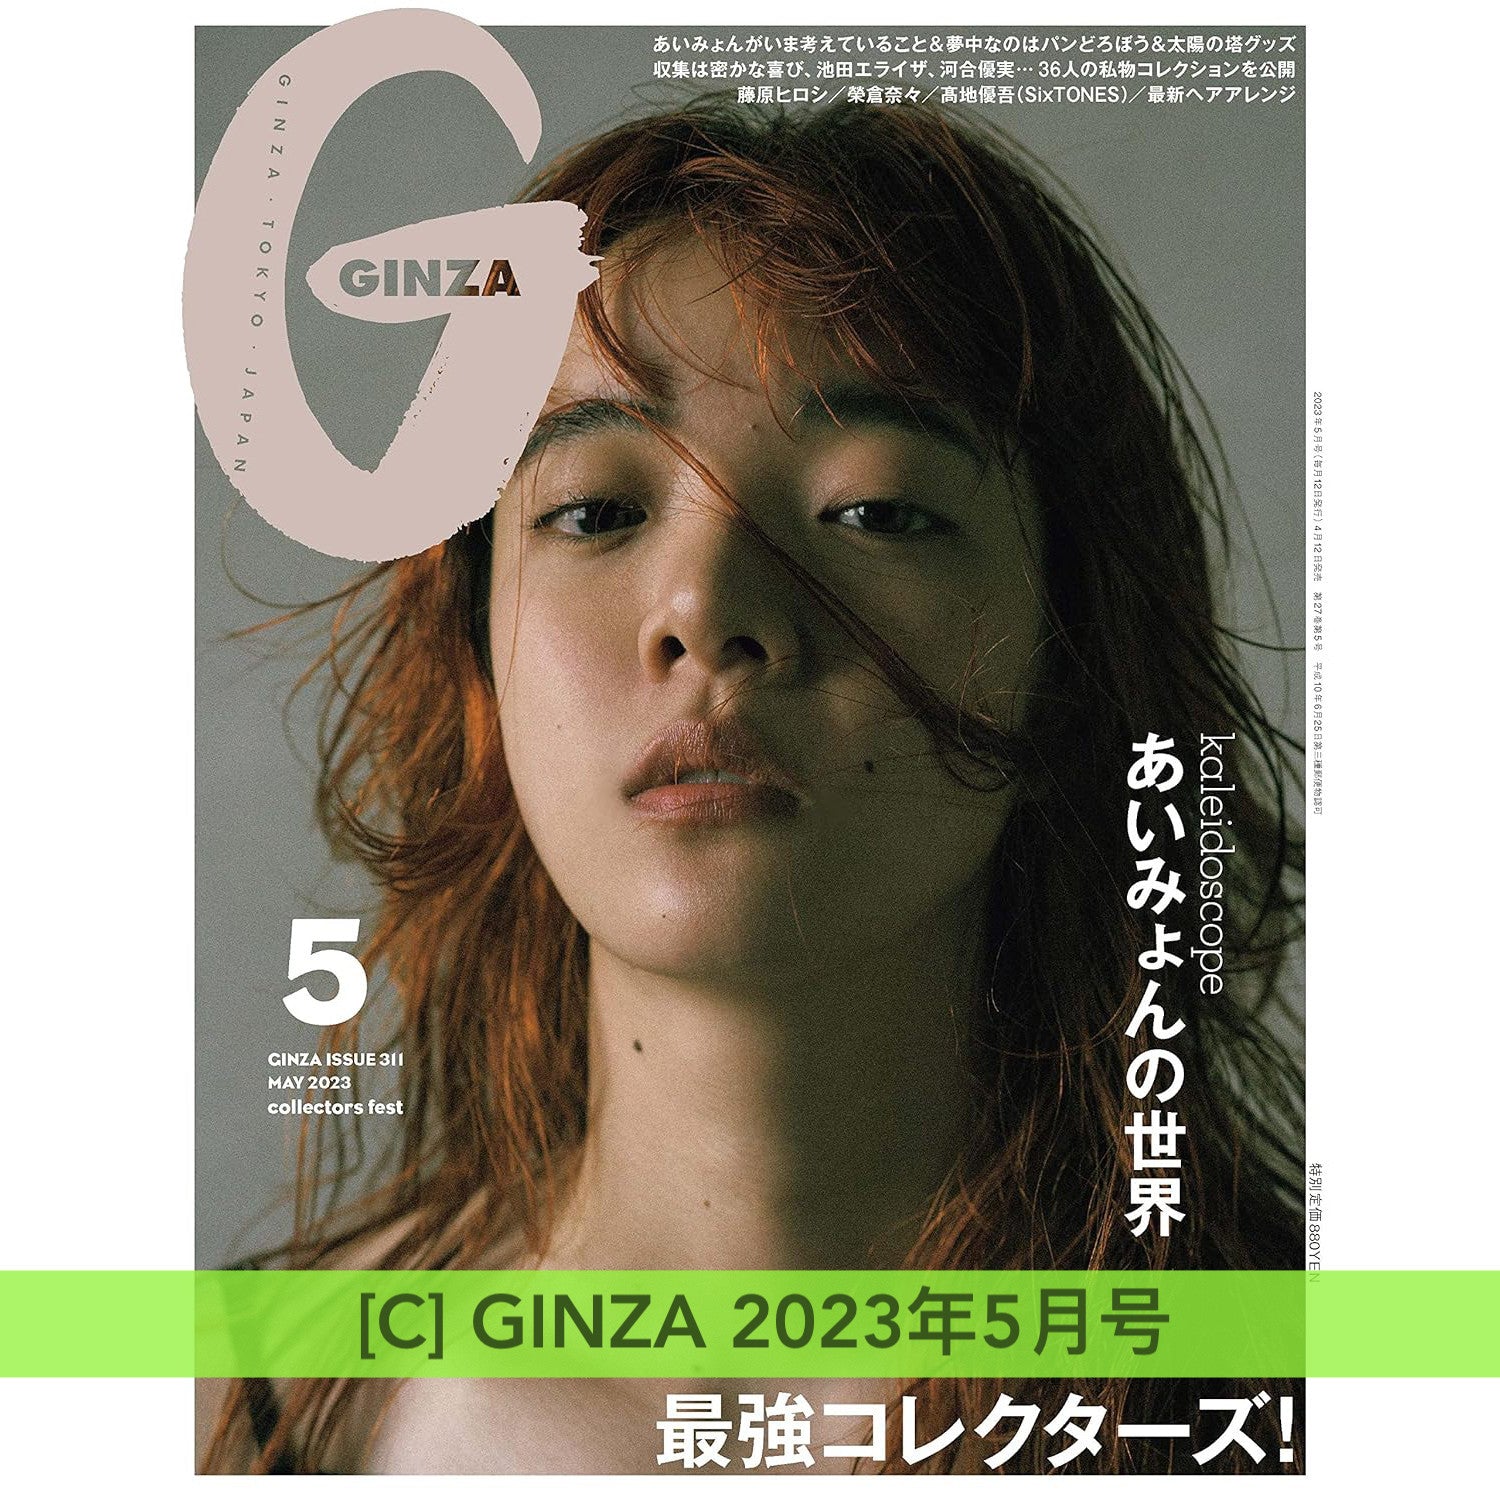 愛繆 Aimyon 封面雜誌《ROCKIN'ON JAPAN 2024年2月号》、《ROCKIN'ON 